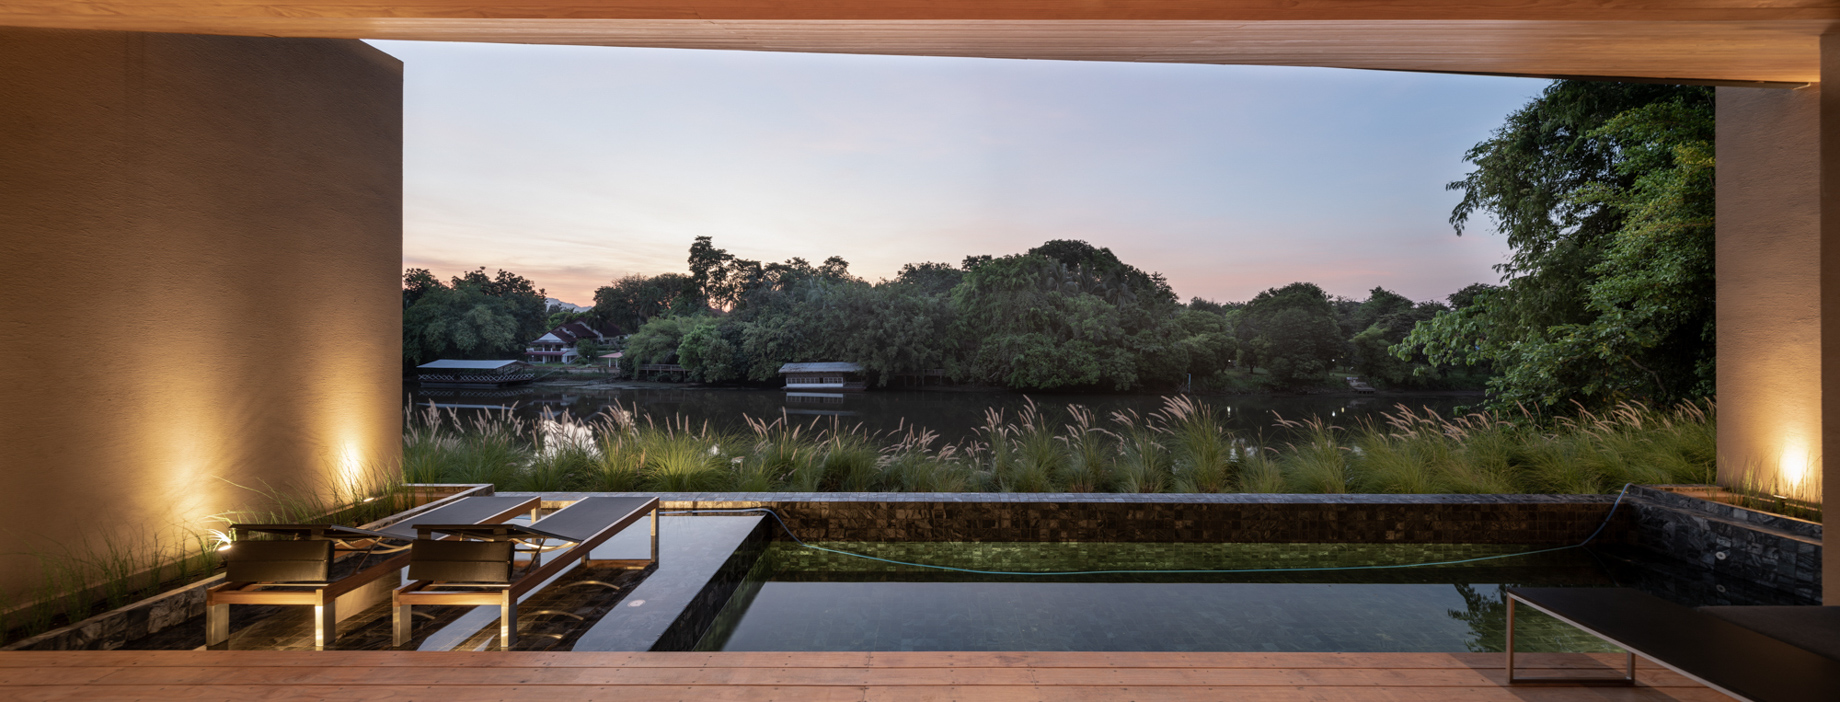 Tara Villa Riverkwai Resort – Kanchanaburi, Thailand – Two Bedroom Pool Villa Exterior River View Night